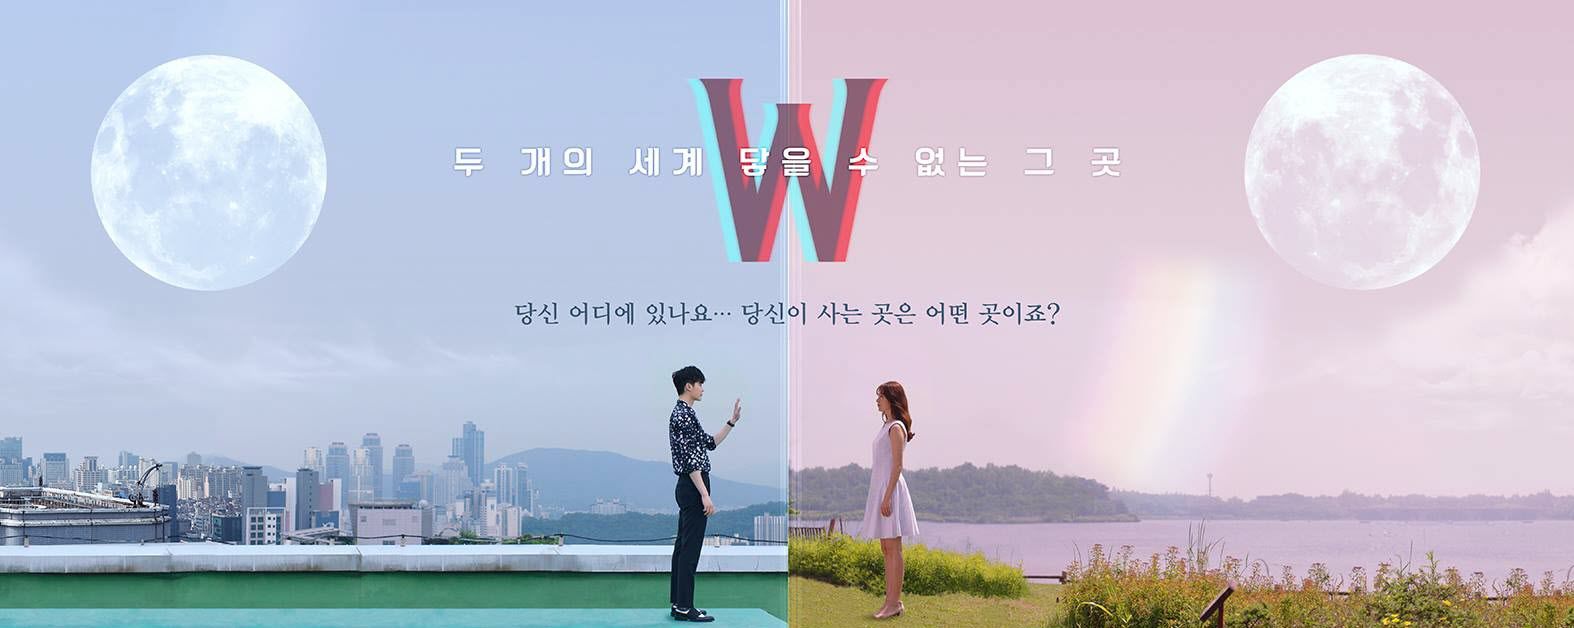 W - Two Worlds Apart : série fantastique sud-coréenne.